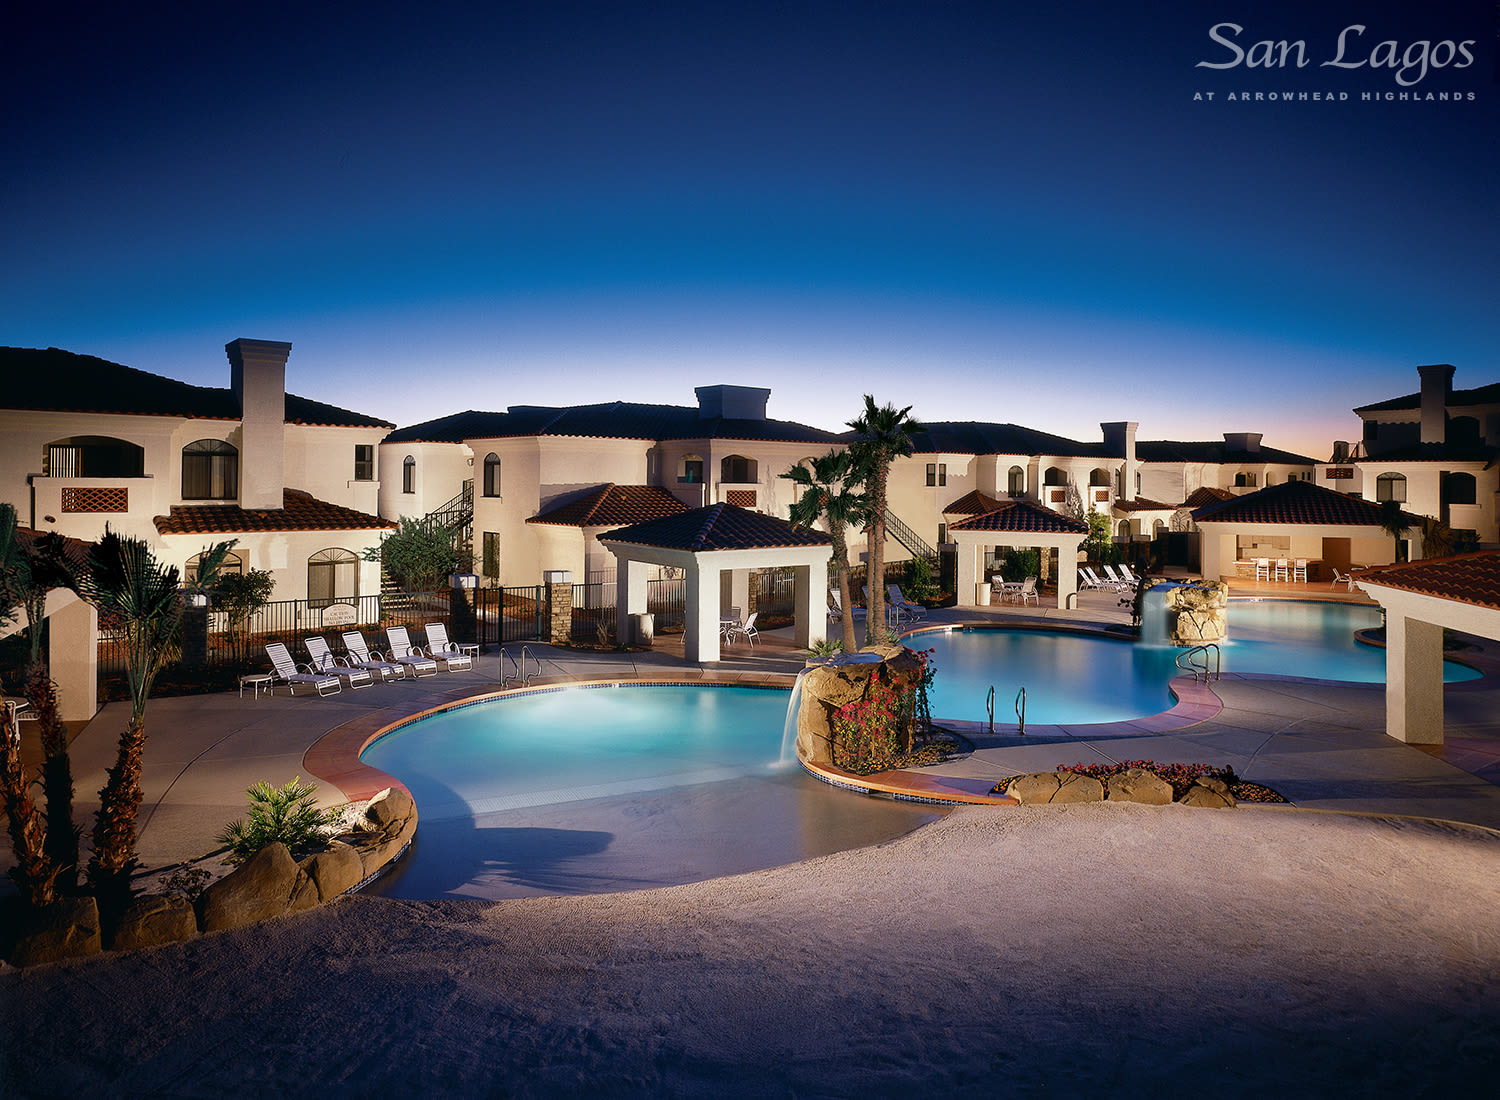 San Lagos apartments in Glendale, Arizona